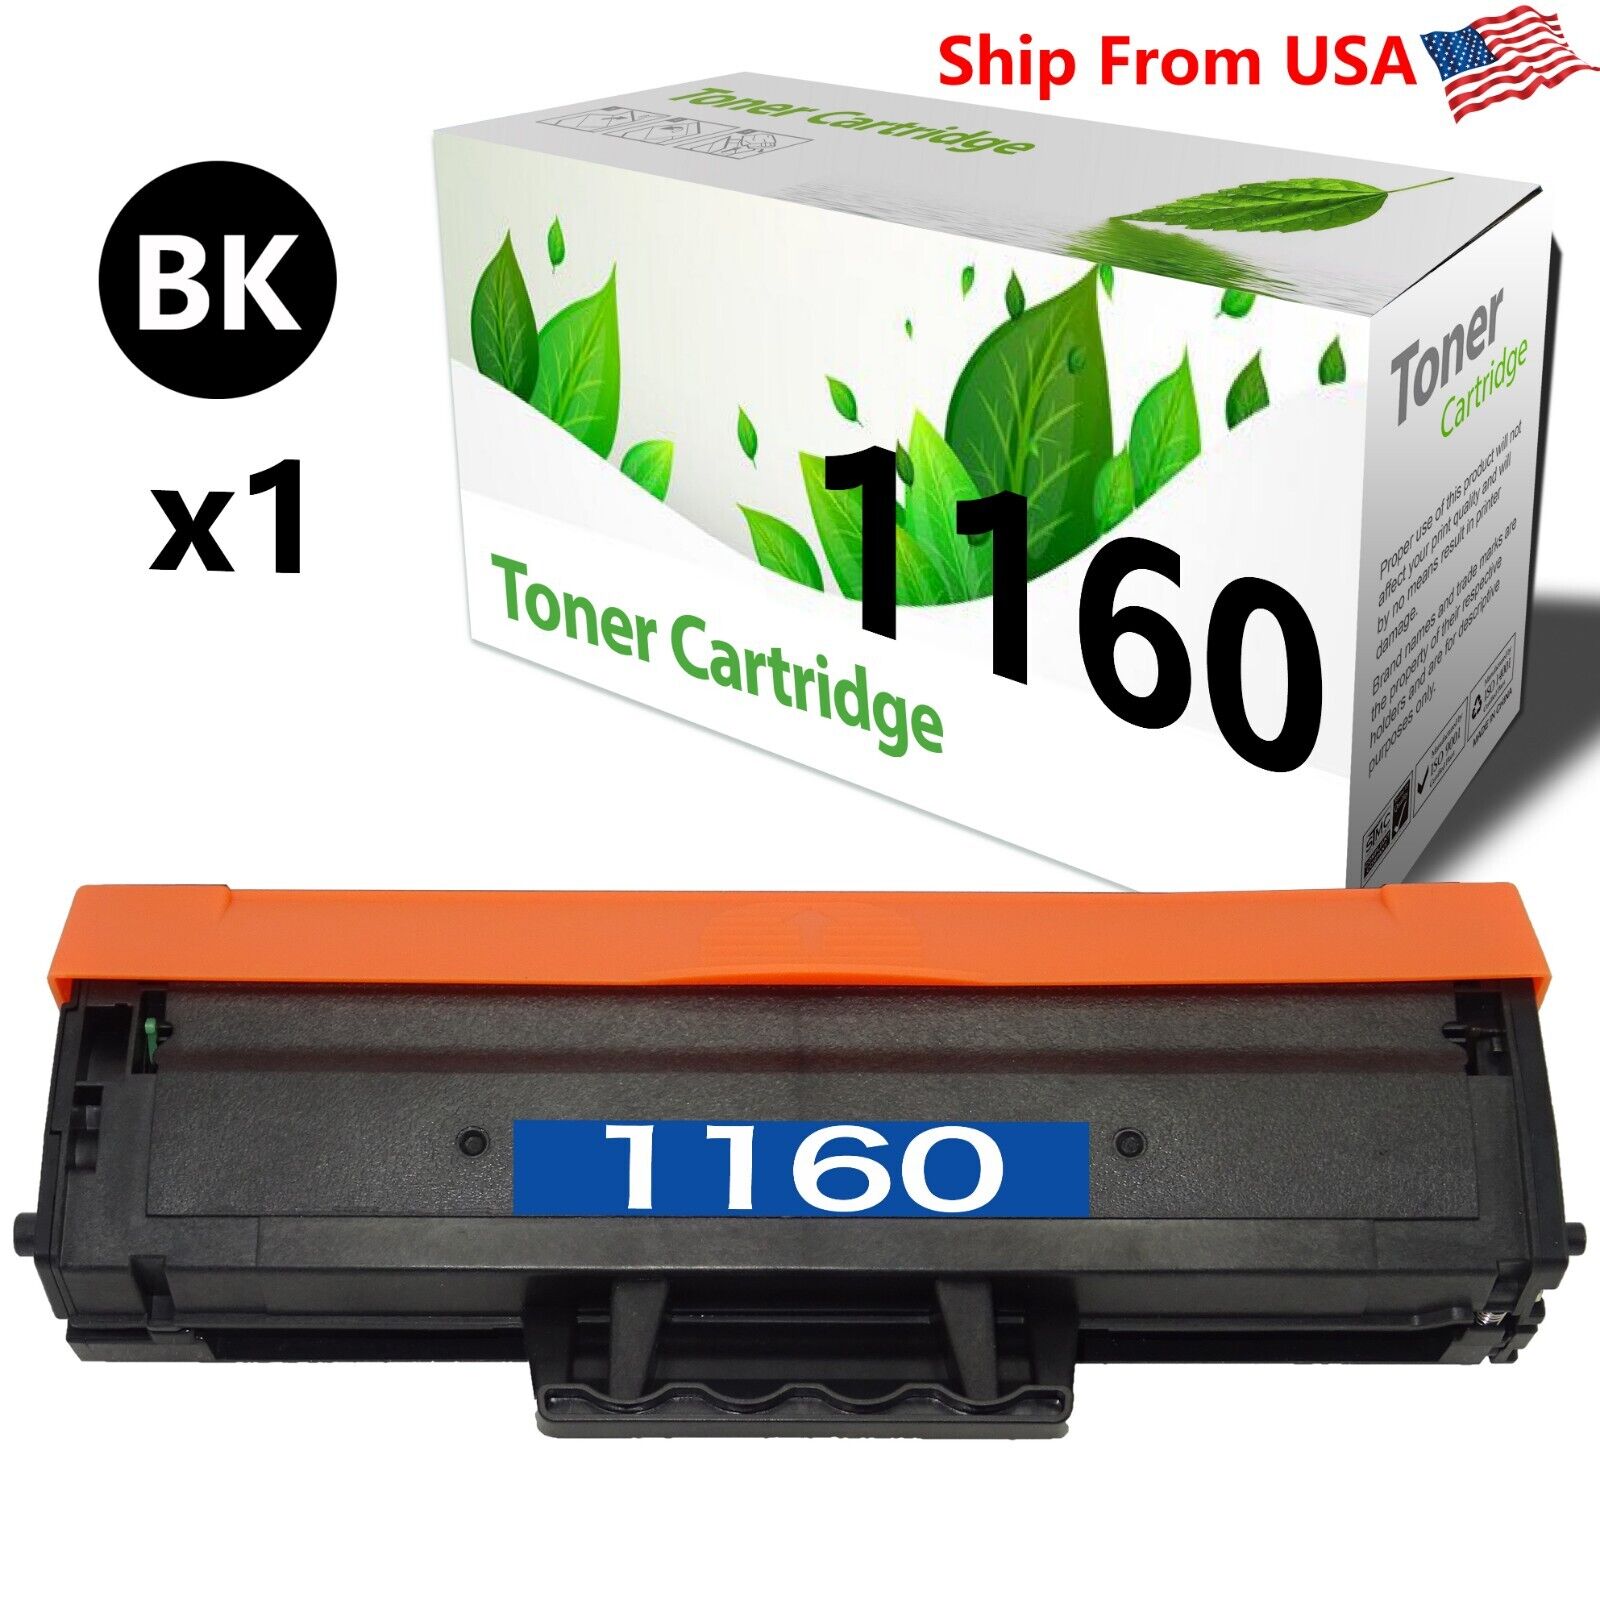 1-Pack of Black B1160 Toner Cartridge Replacement for B1165nfw Printer